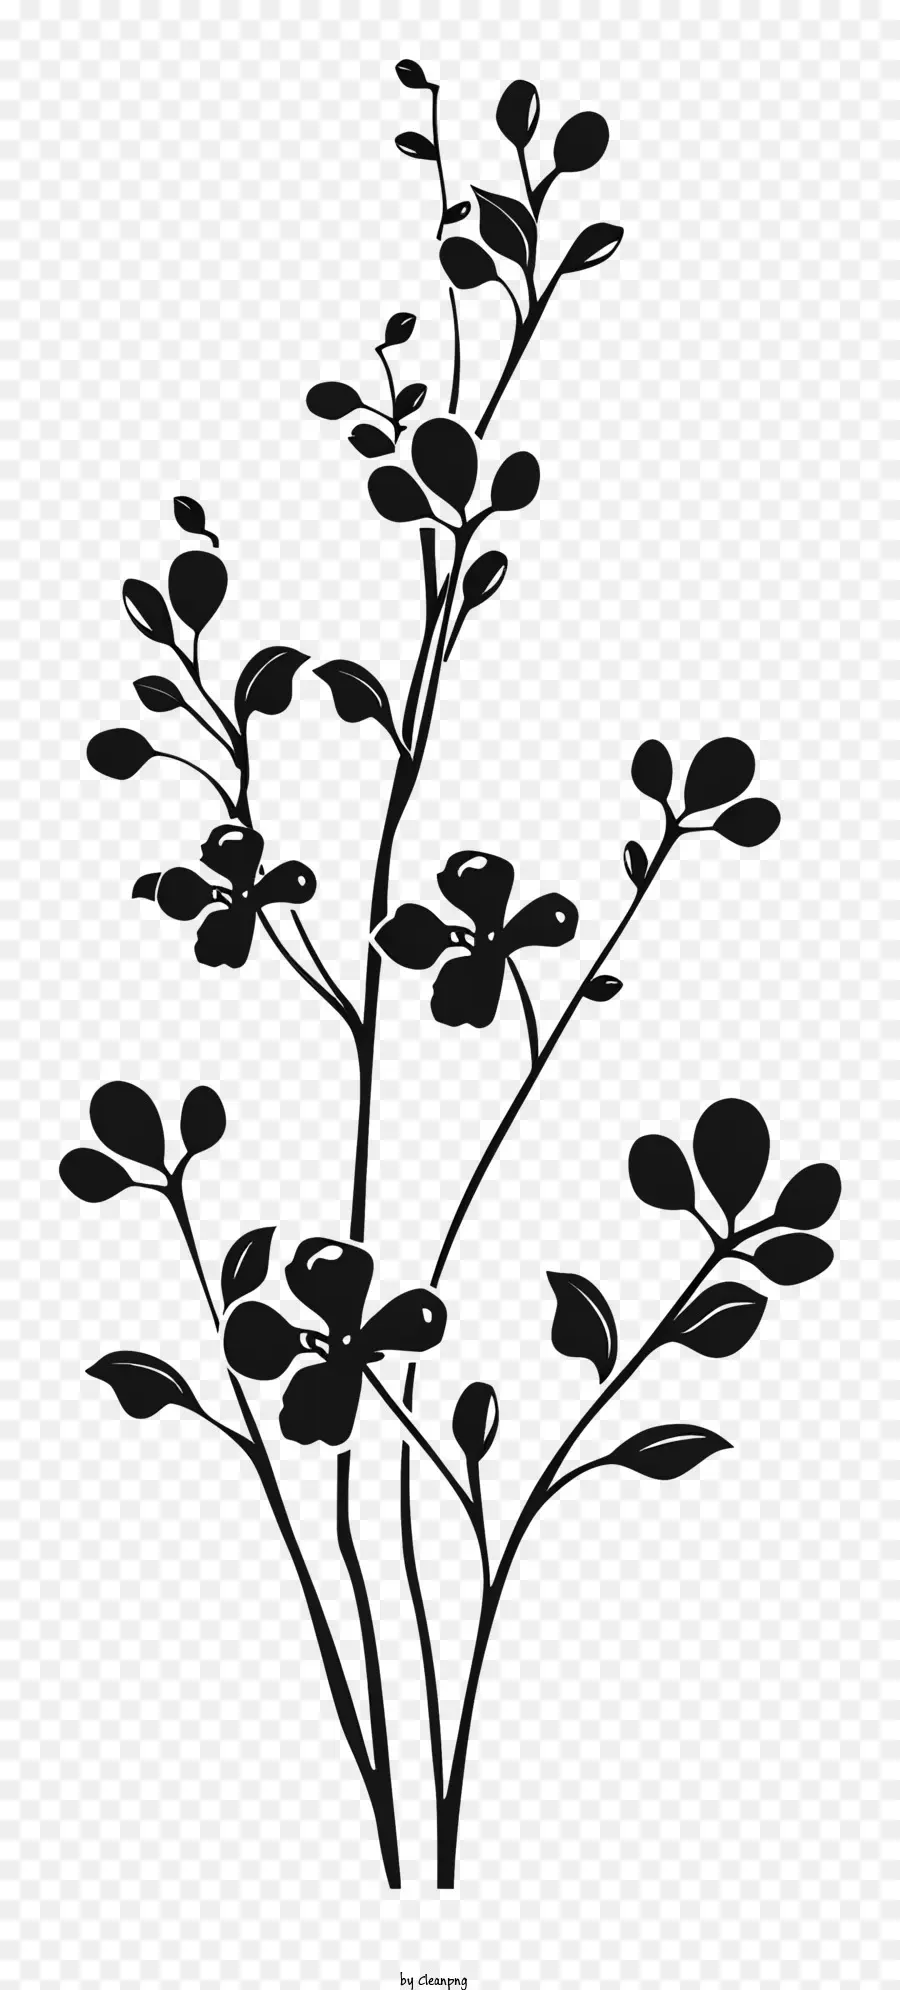 bóng hoa - Nhánh hình bóng có lá màu đen và trắng